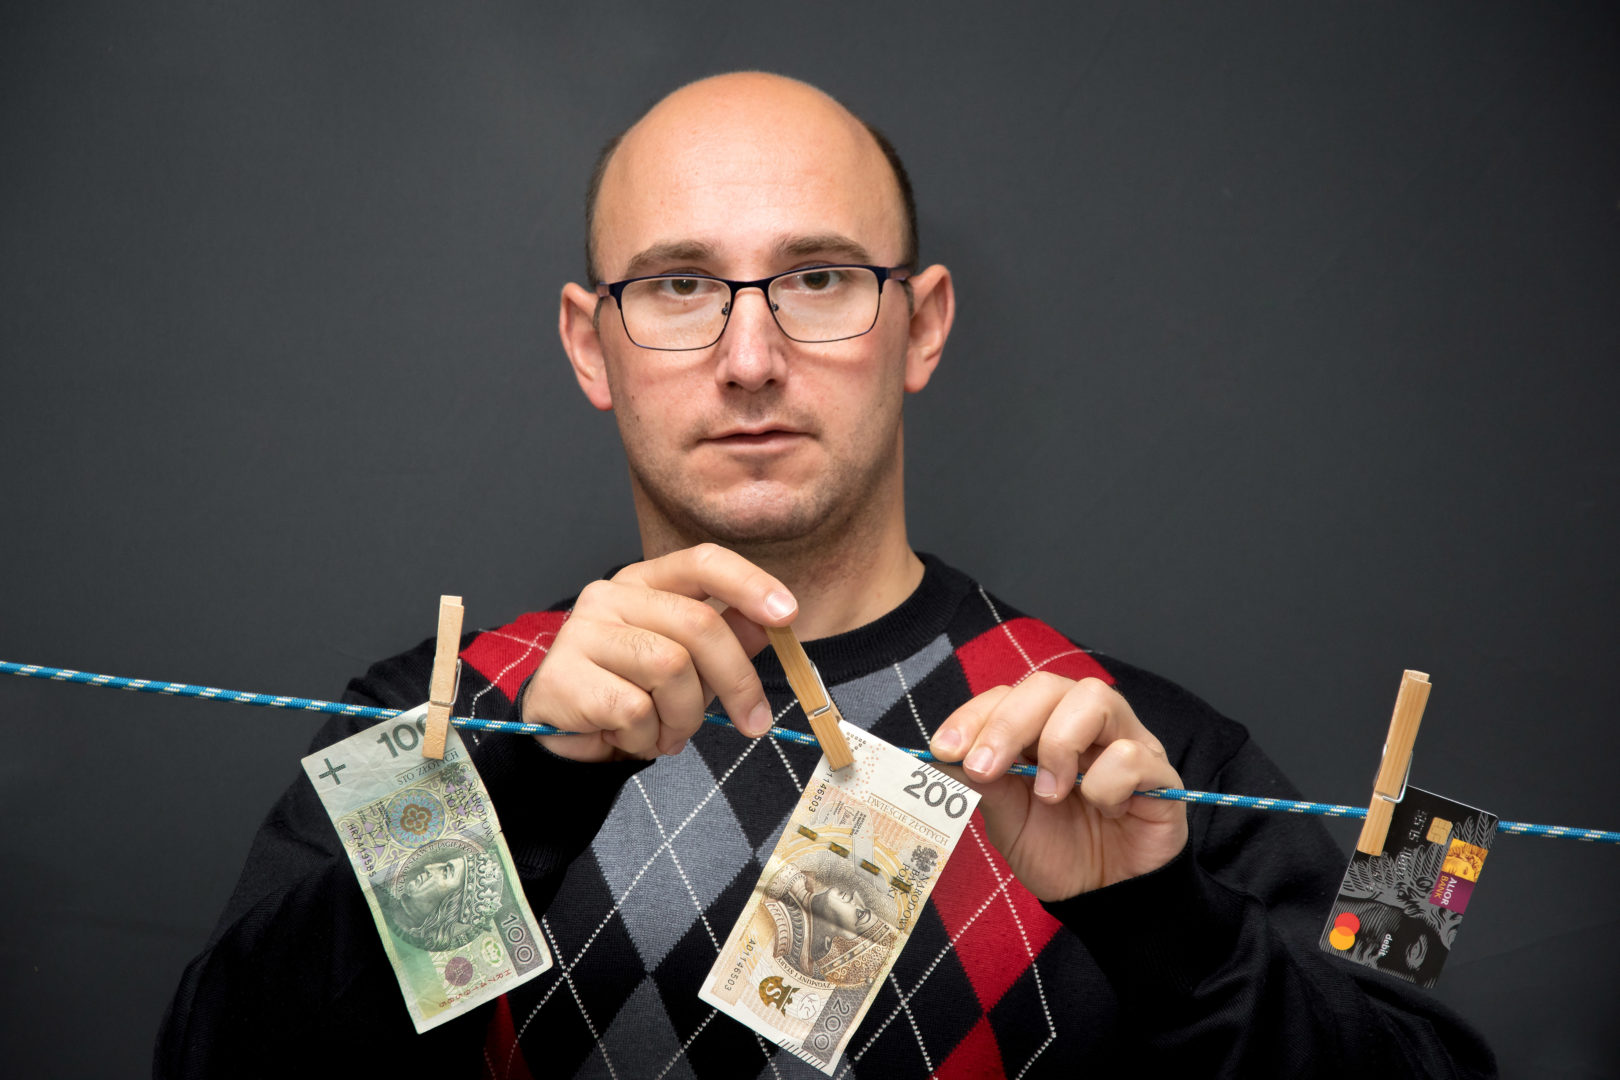 Na zdjęciu mężczyzna przypinający na sznurku dwa banknoty w nominale 100 i 200 złotych. Mężczyzna widoczny jest od torsu w górę, z tyłu ciemne tło.